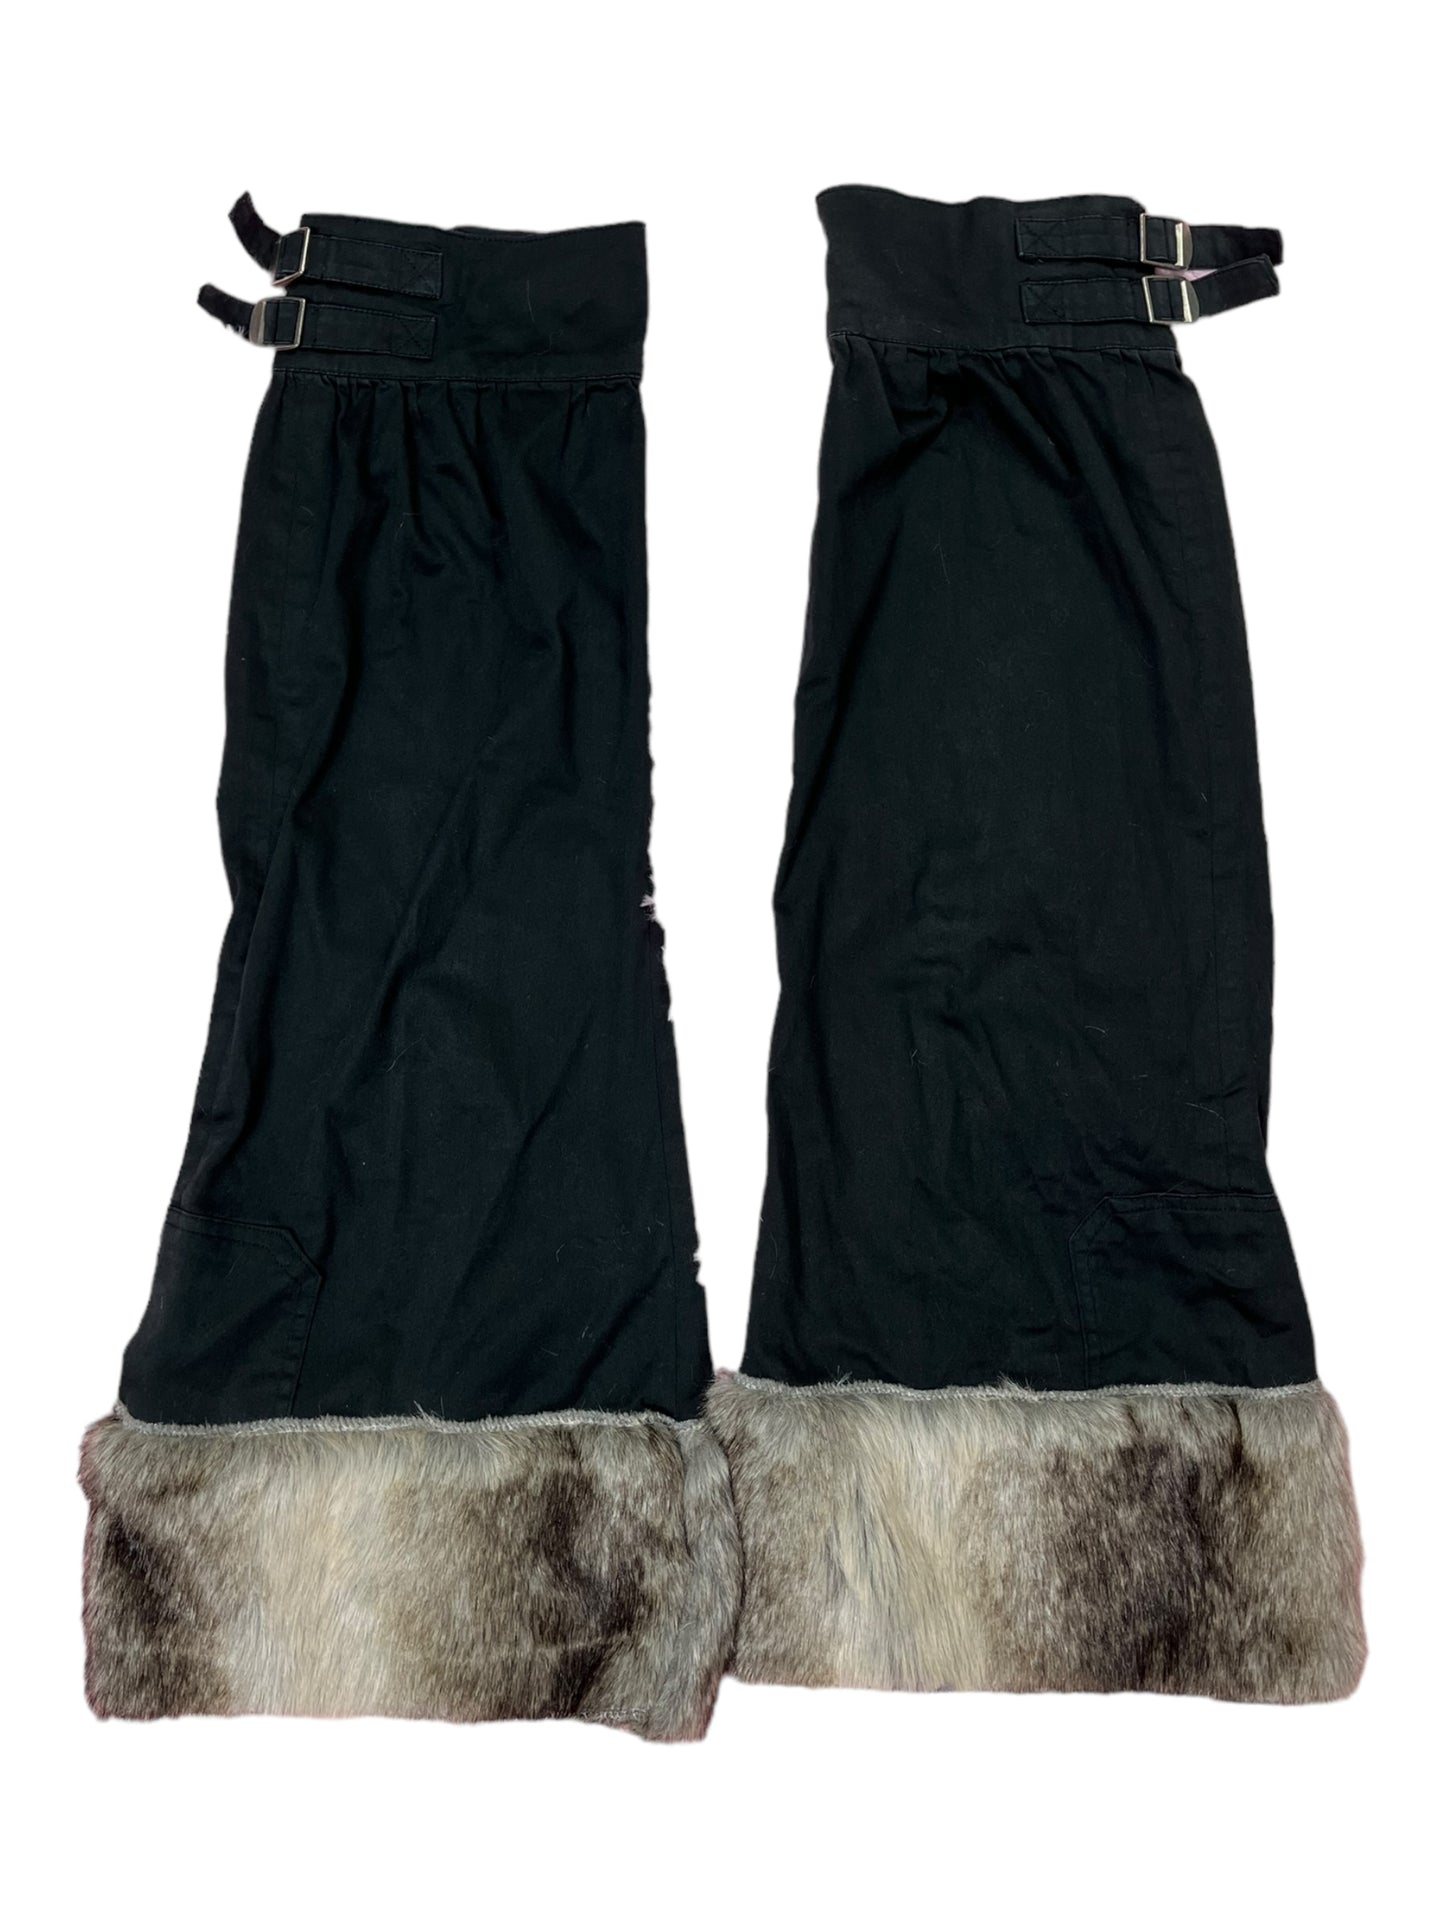 Fur skirts leg warmers